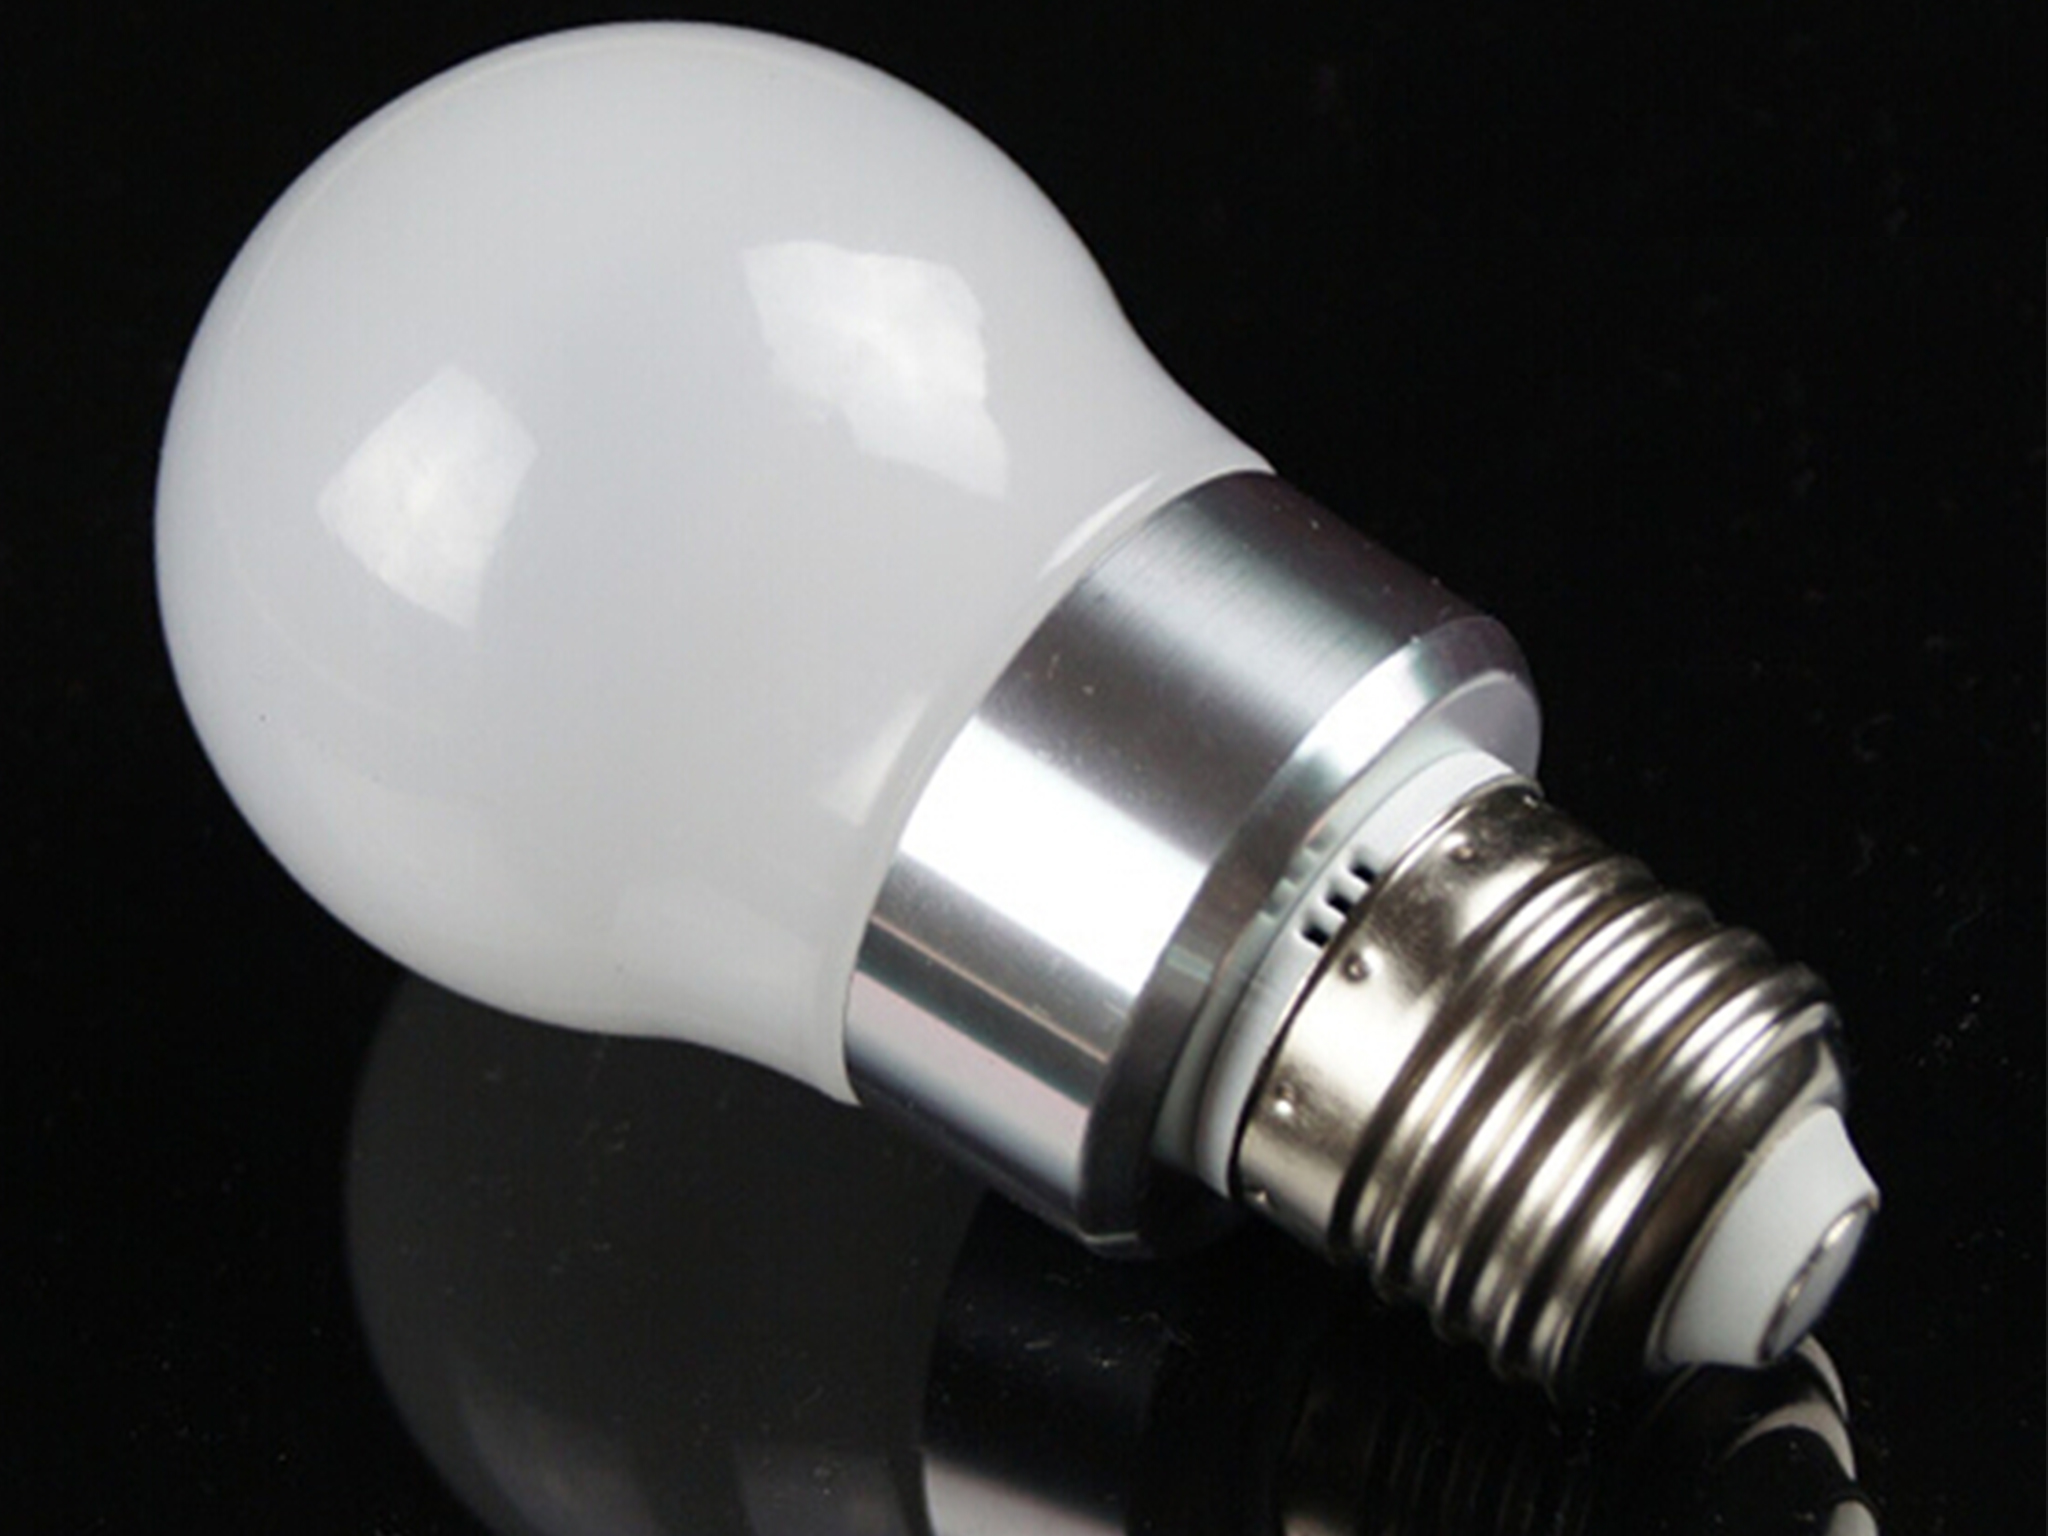 3W LED globle bulb